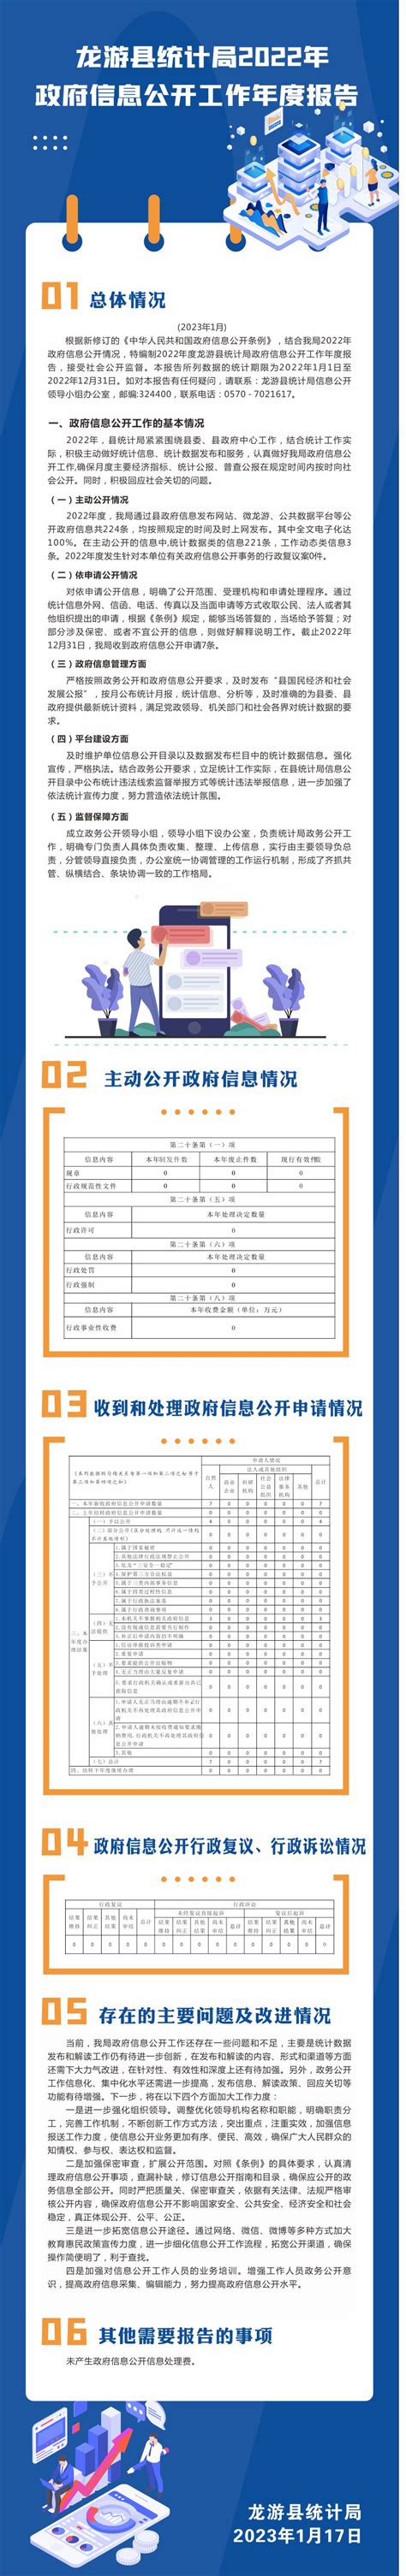 【图解】龙游县统计局2022年政府信息公开工作年度报告